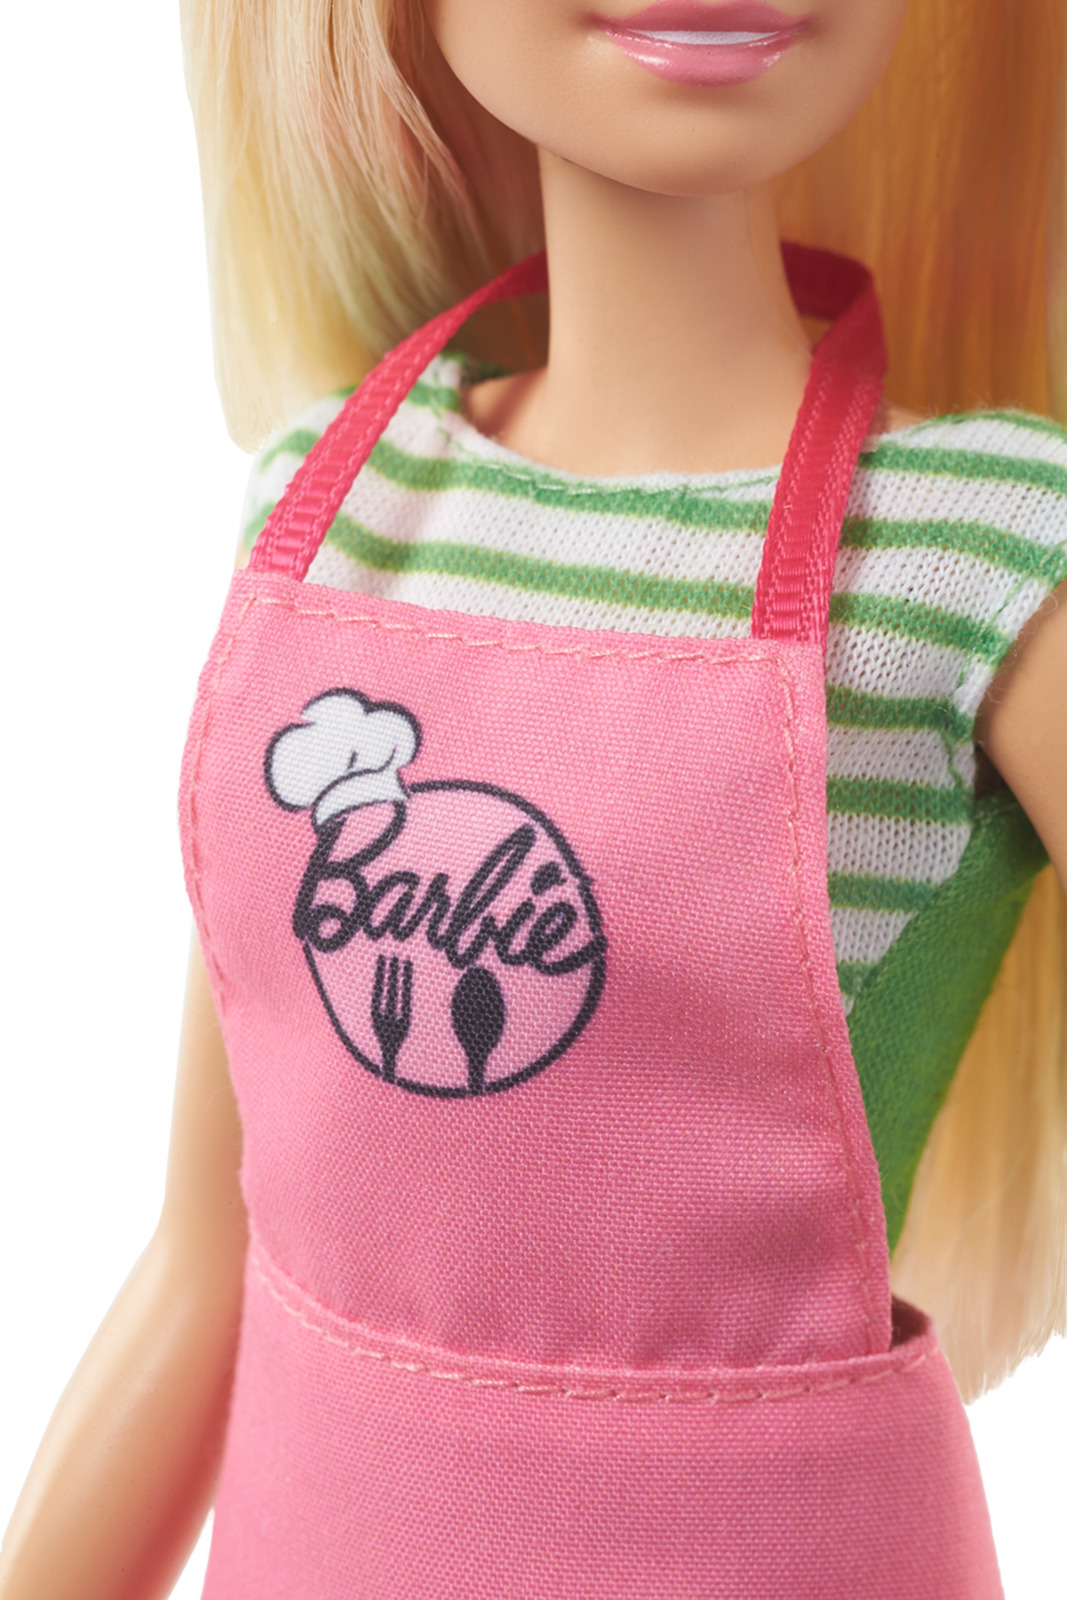 фото Barbie Кукла Barbie и Кен шеф-повар